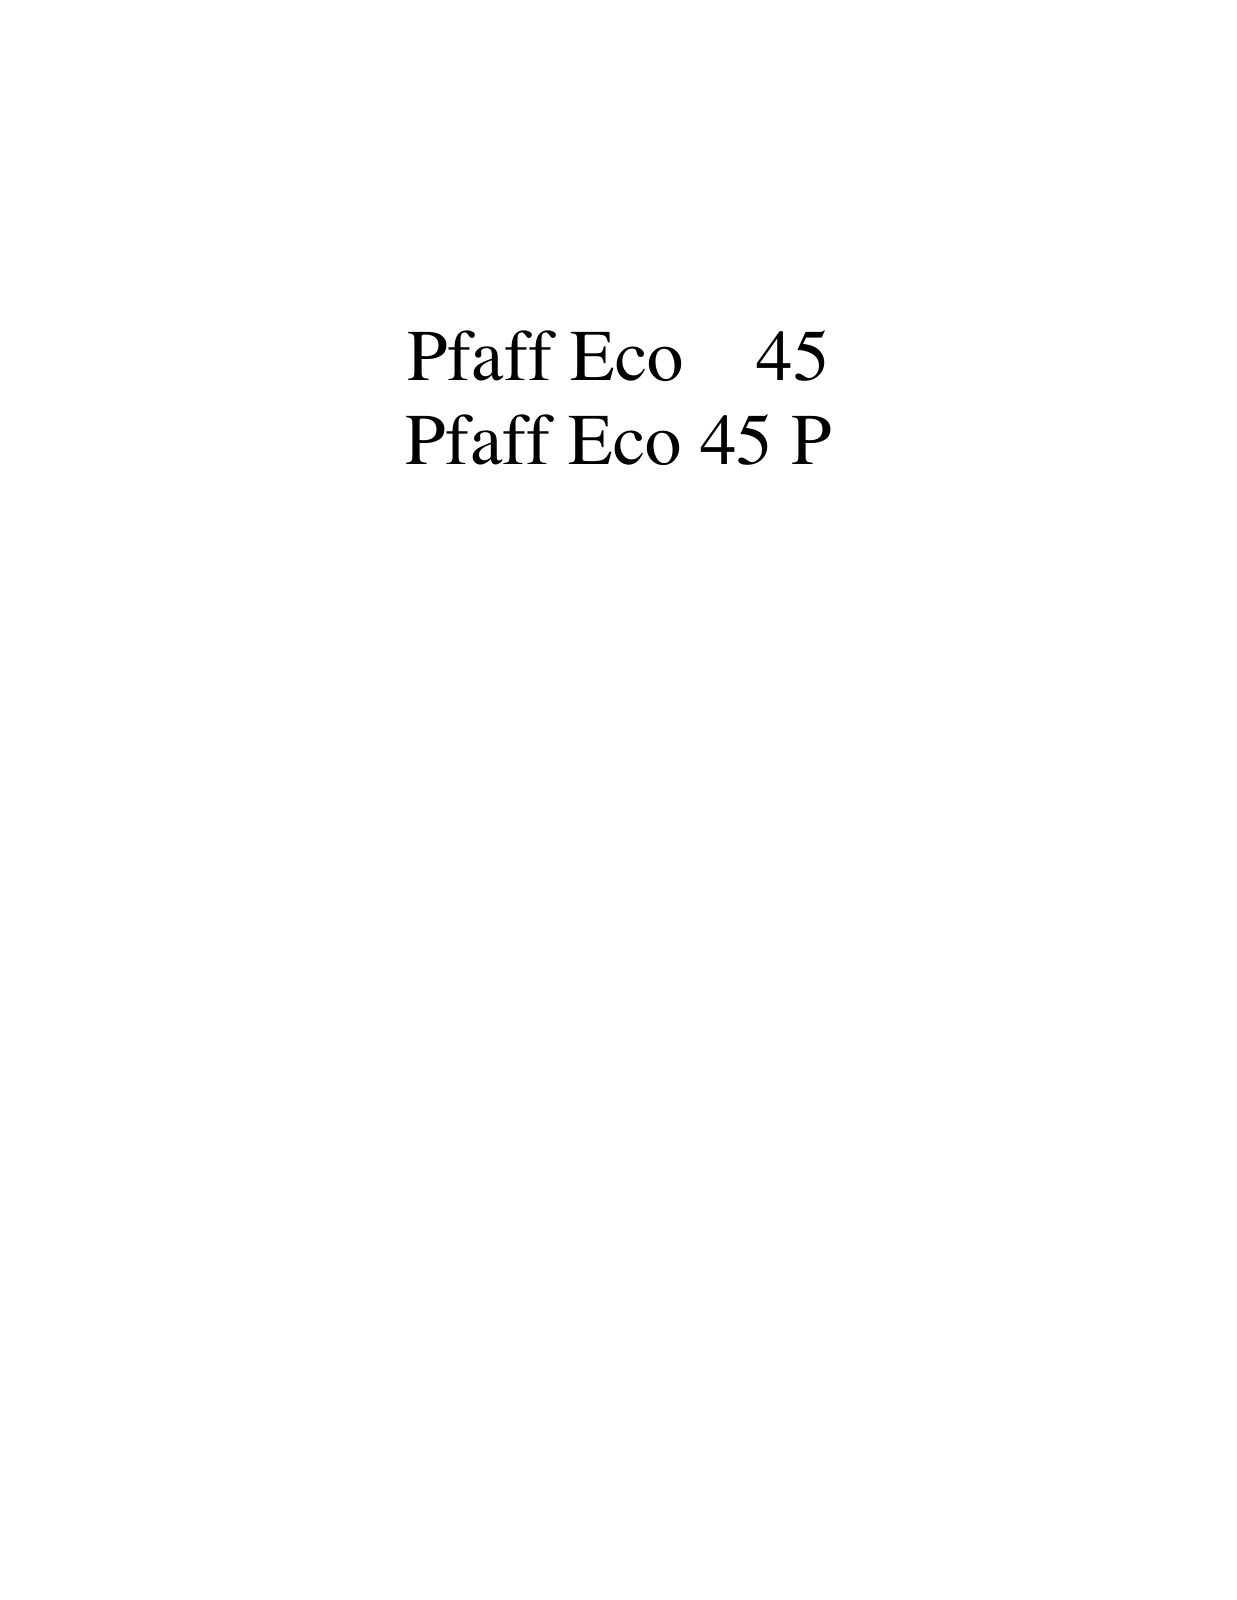 PFAFF Eco 45, Eco 45 P Parts List